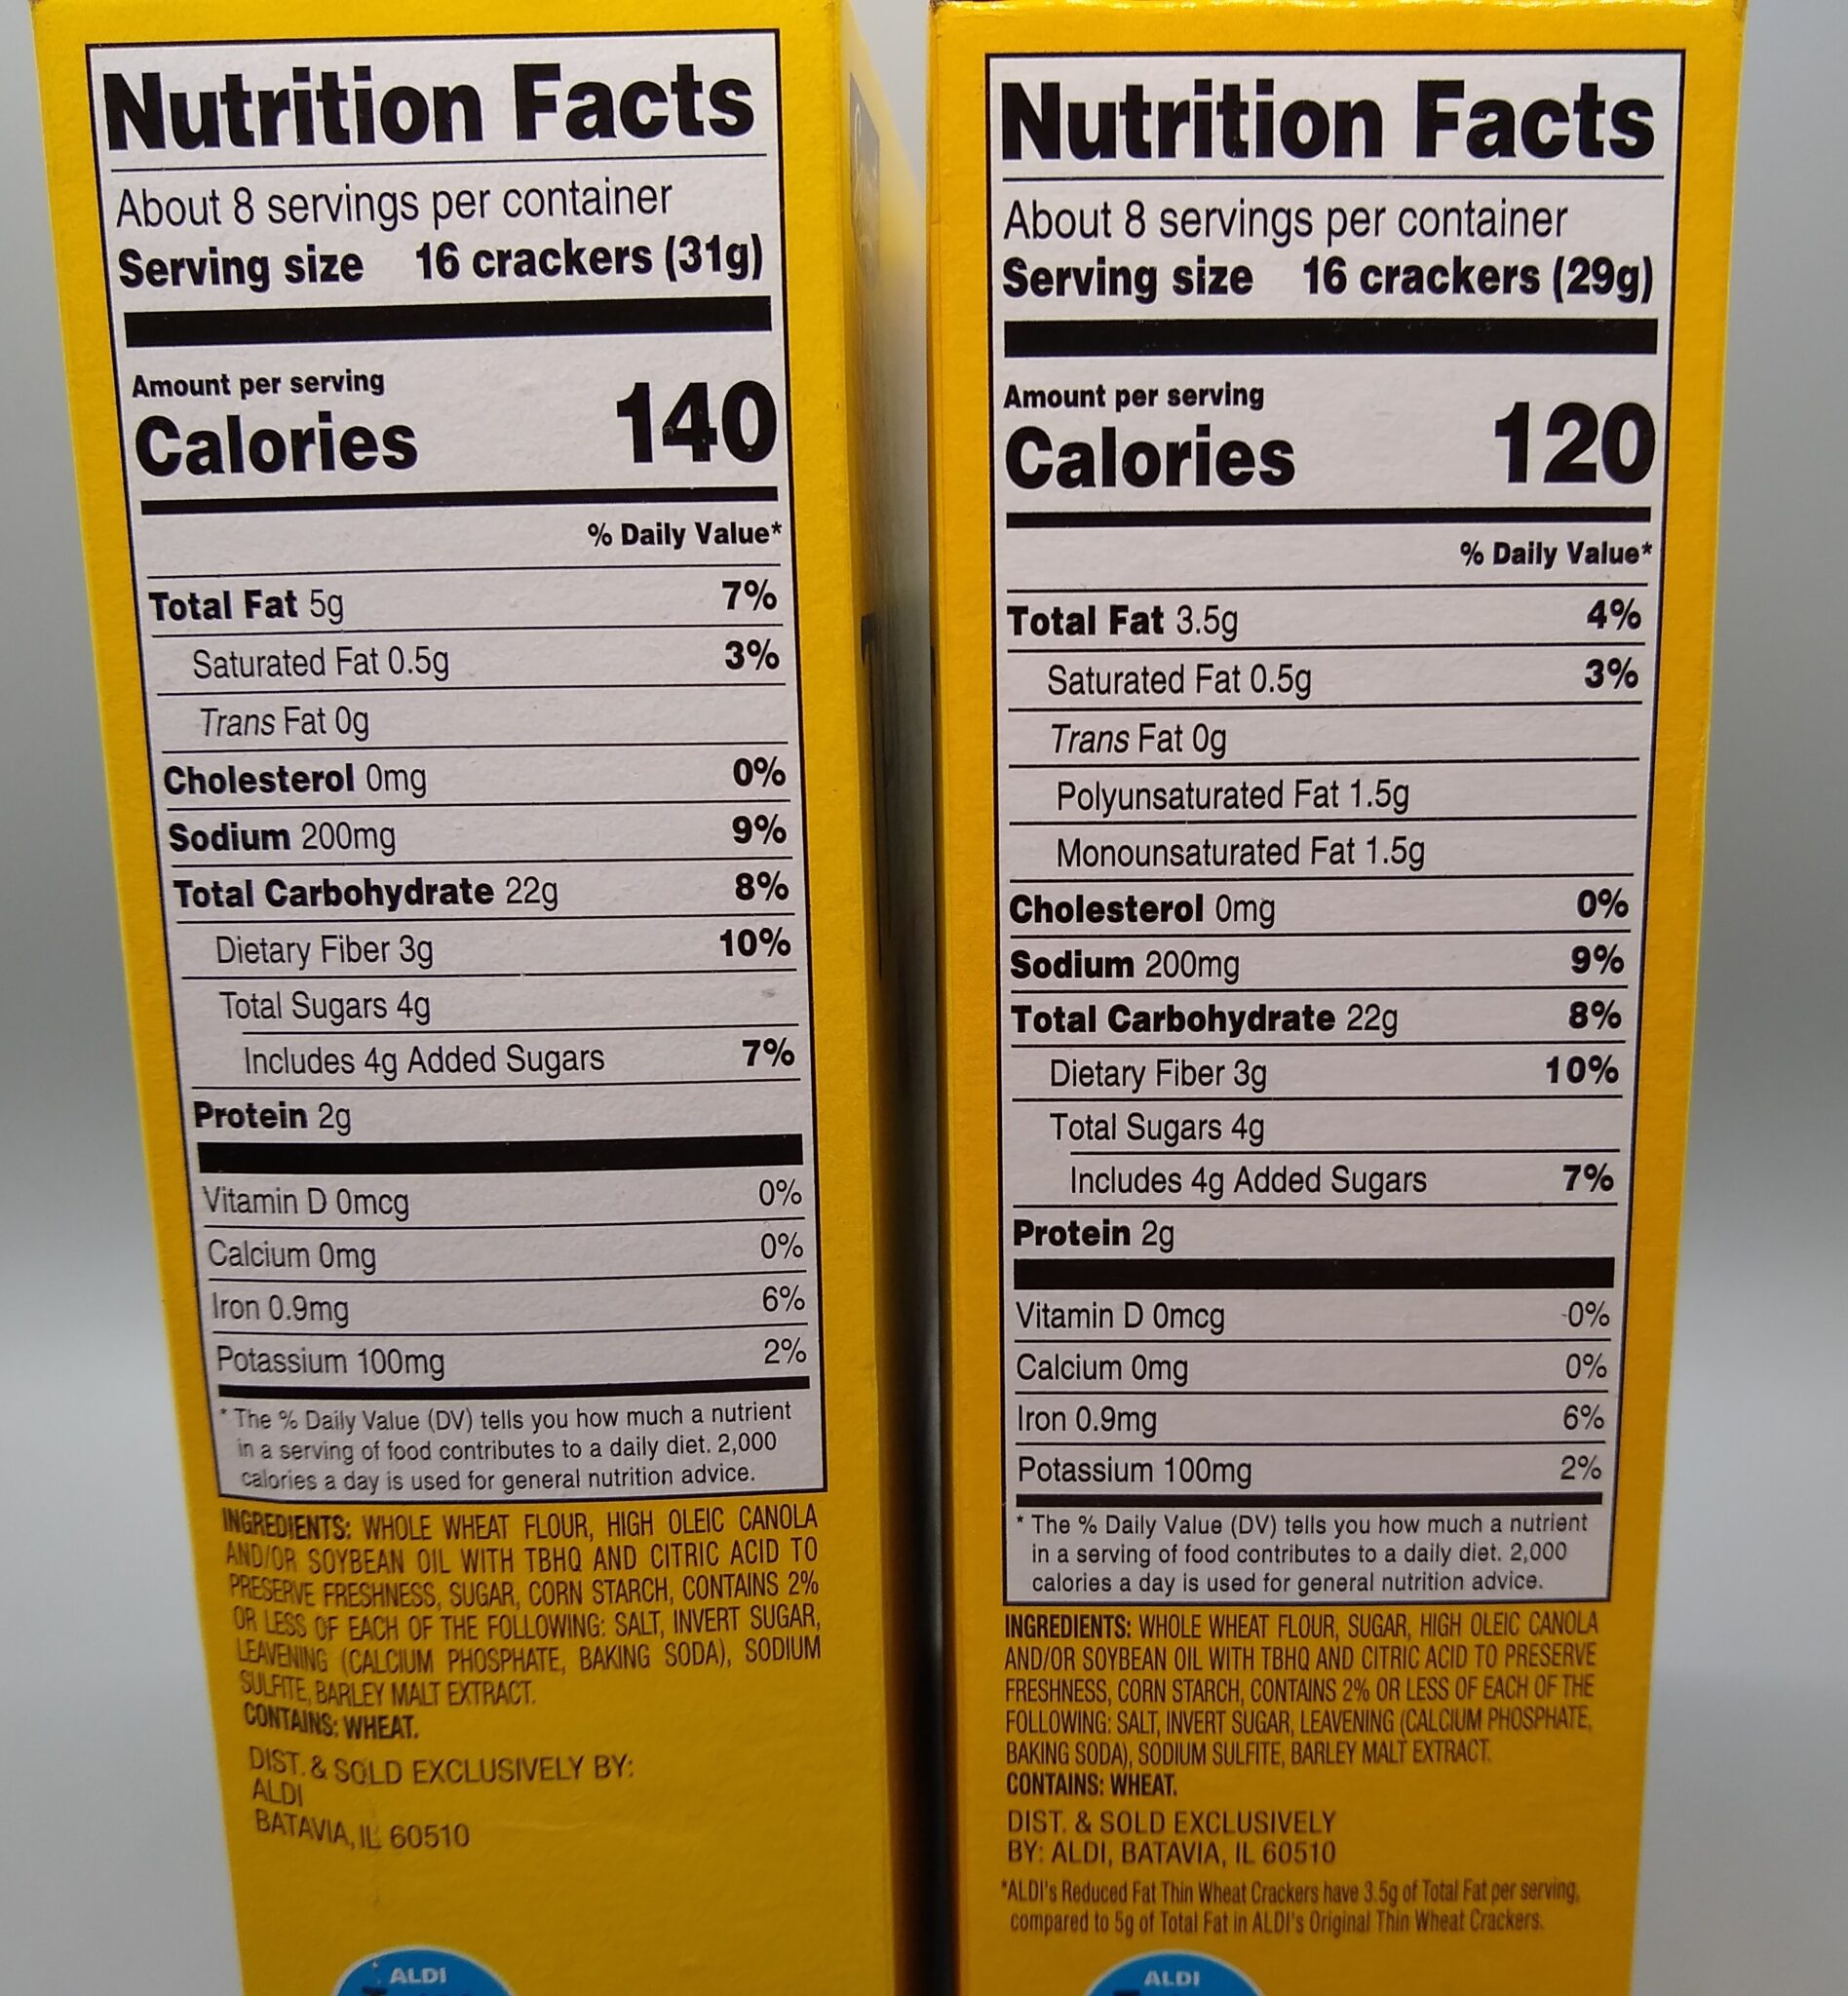 الفرق بين القيم الغذائية لماركتين مختلفتين من نفس المنتج 